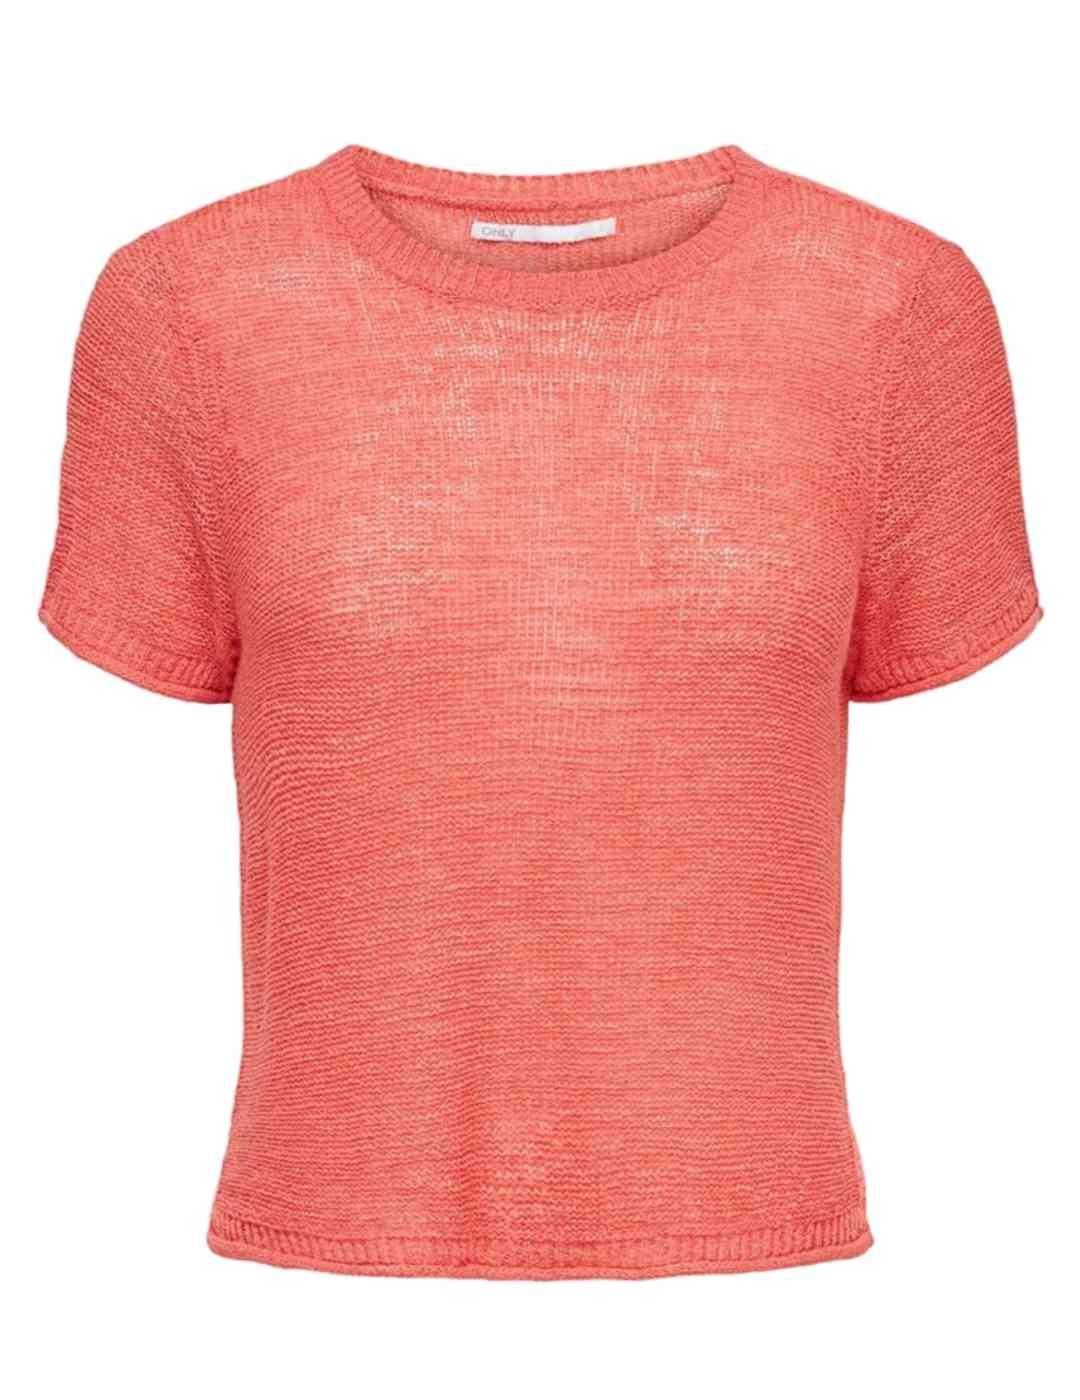 Camiseta Only Sunny punto rosa mnaga corta de mujer